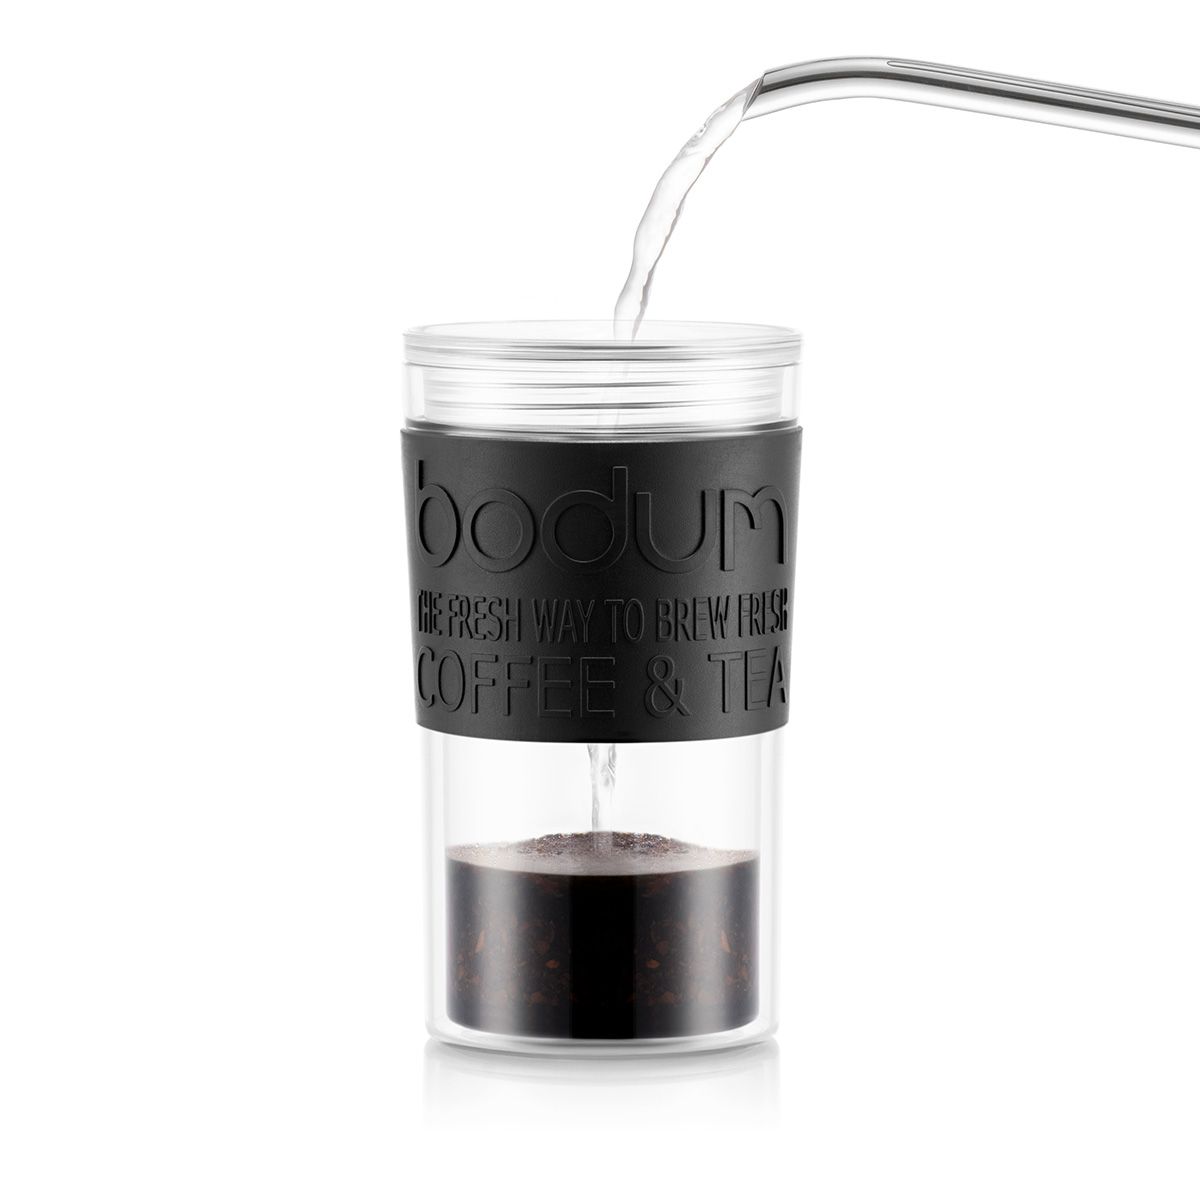 Bodum Reisepressen-Set Kaffeemaschine mit Extra-Deckel Doppelwandig, Schwarz